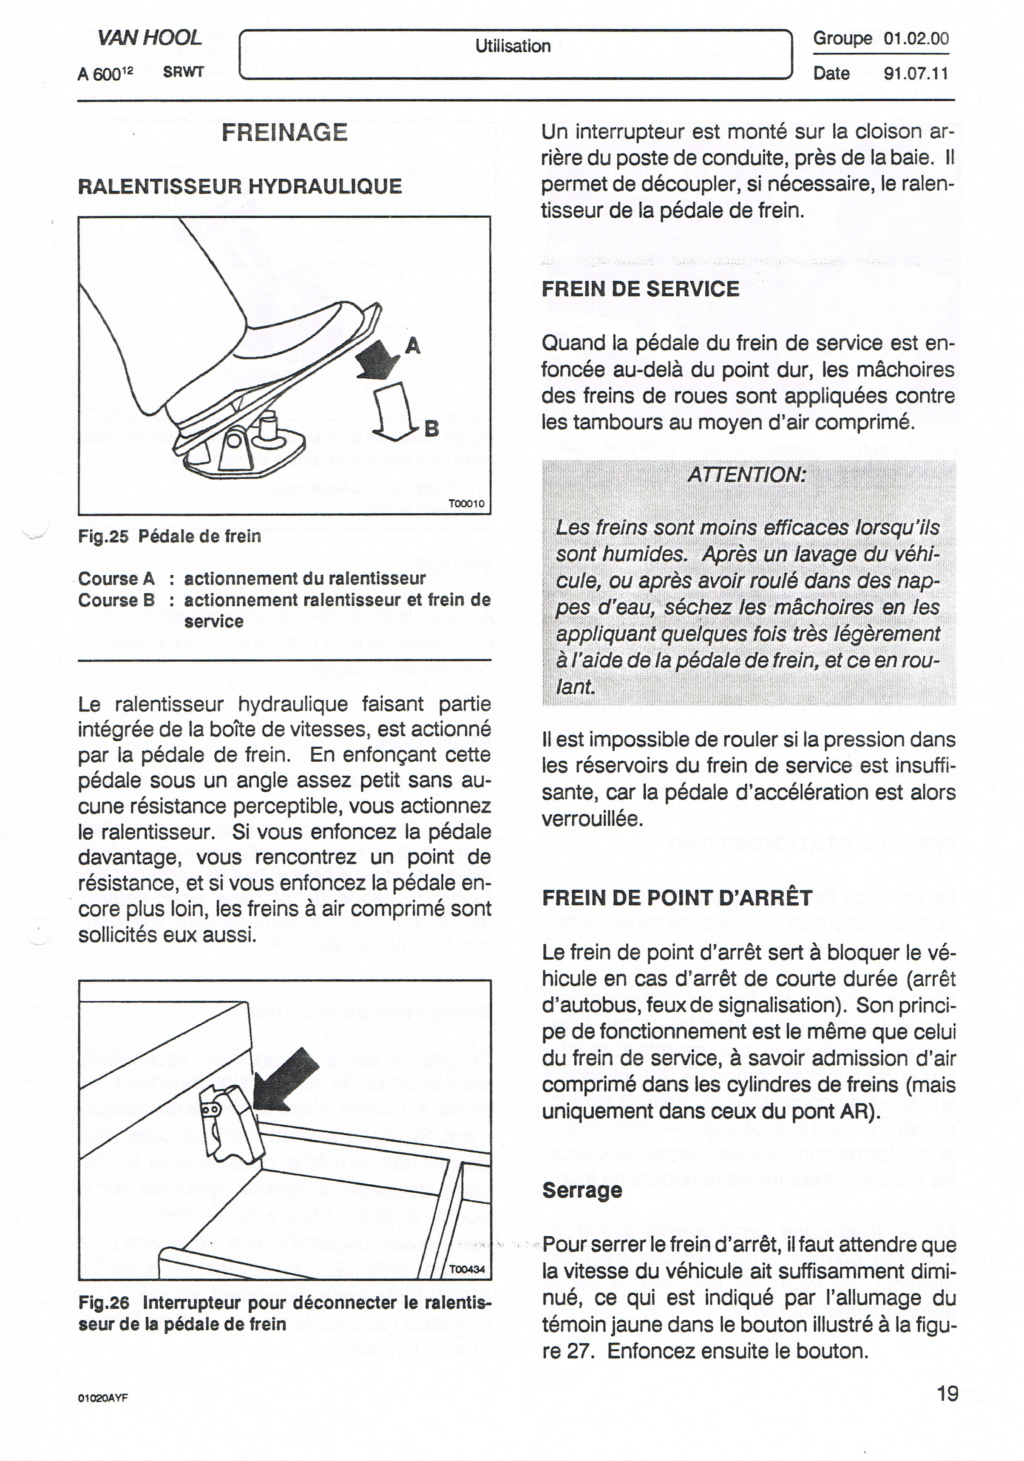 OPERATEUR DE TRANSPORT DE WALLONIE  OTW - Page 3 Ccf23142